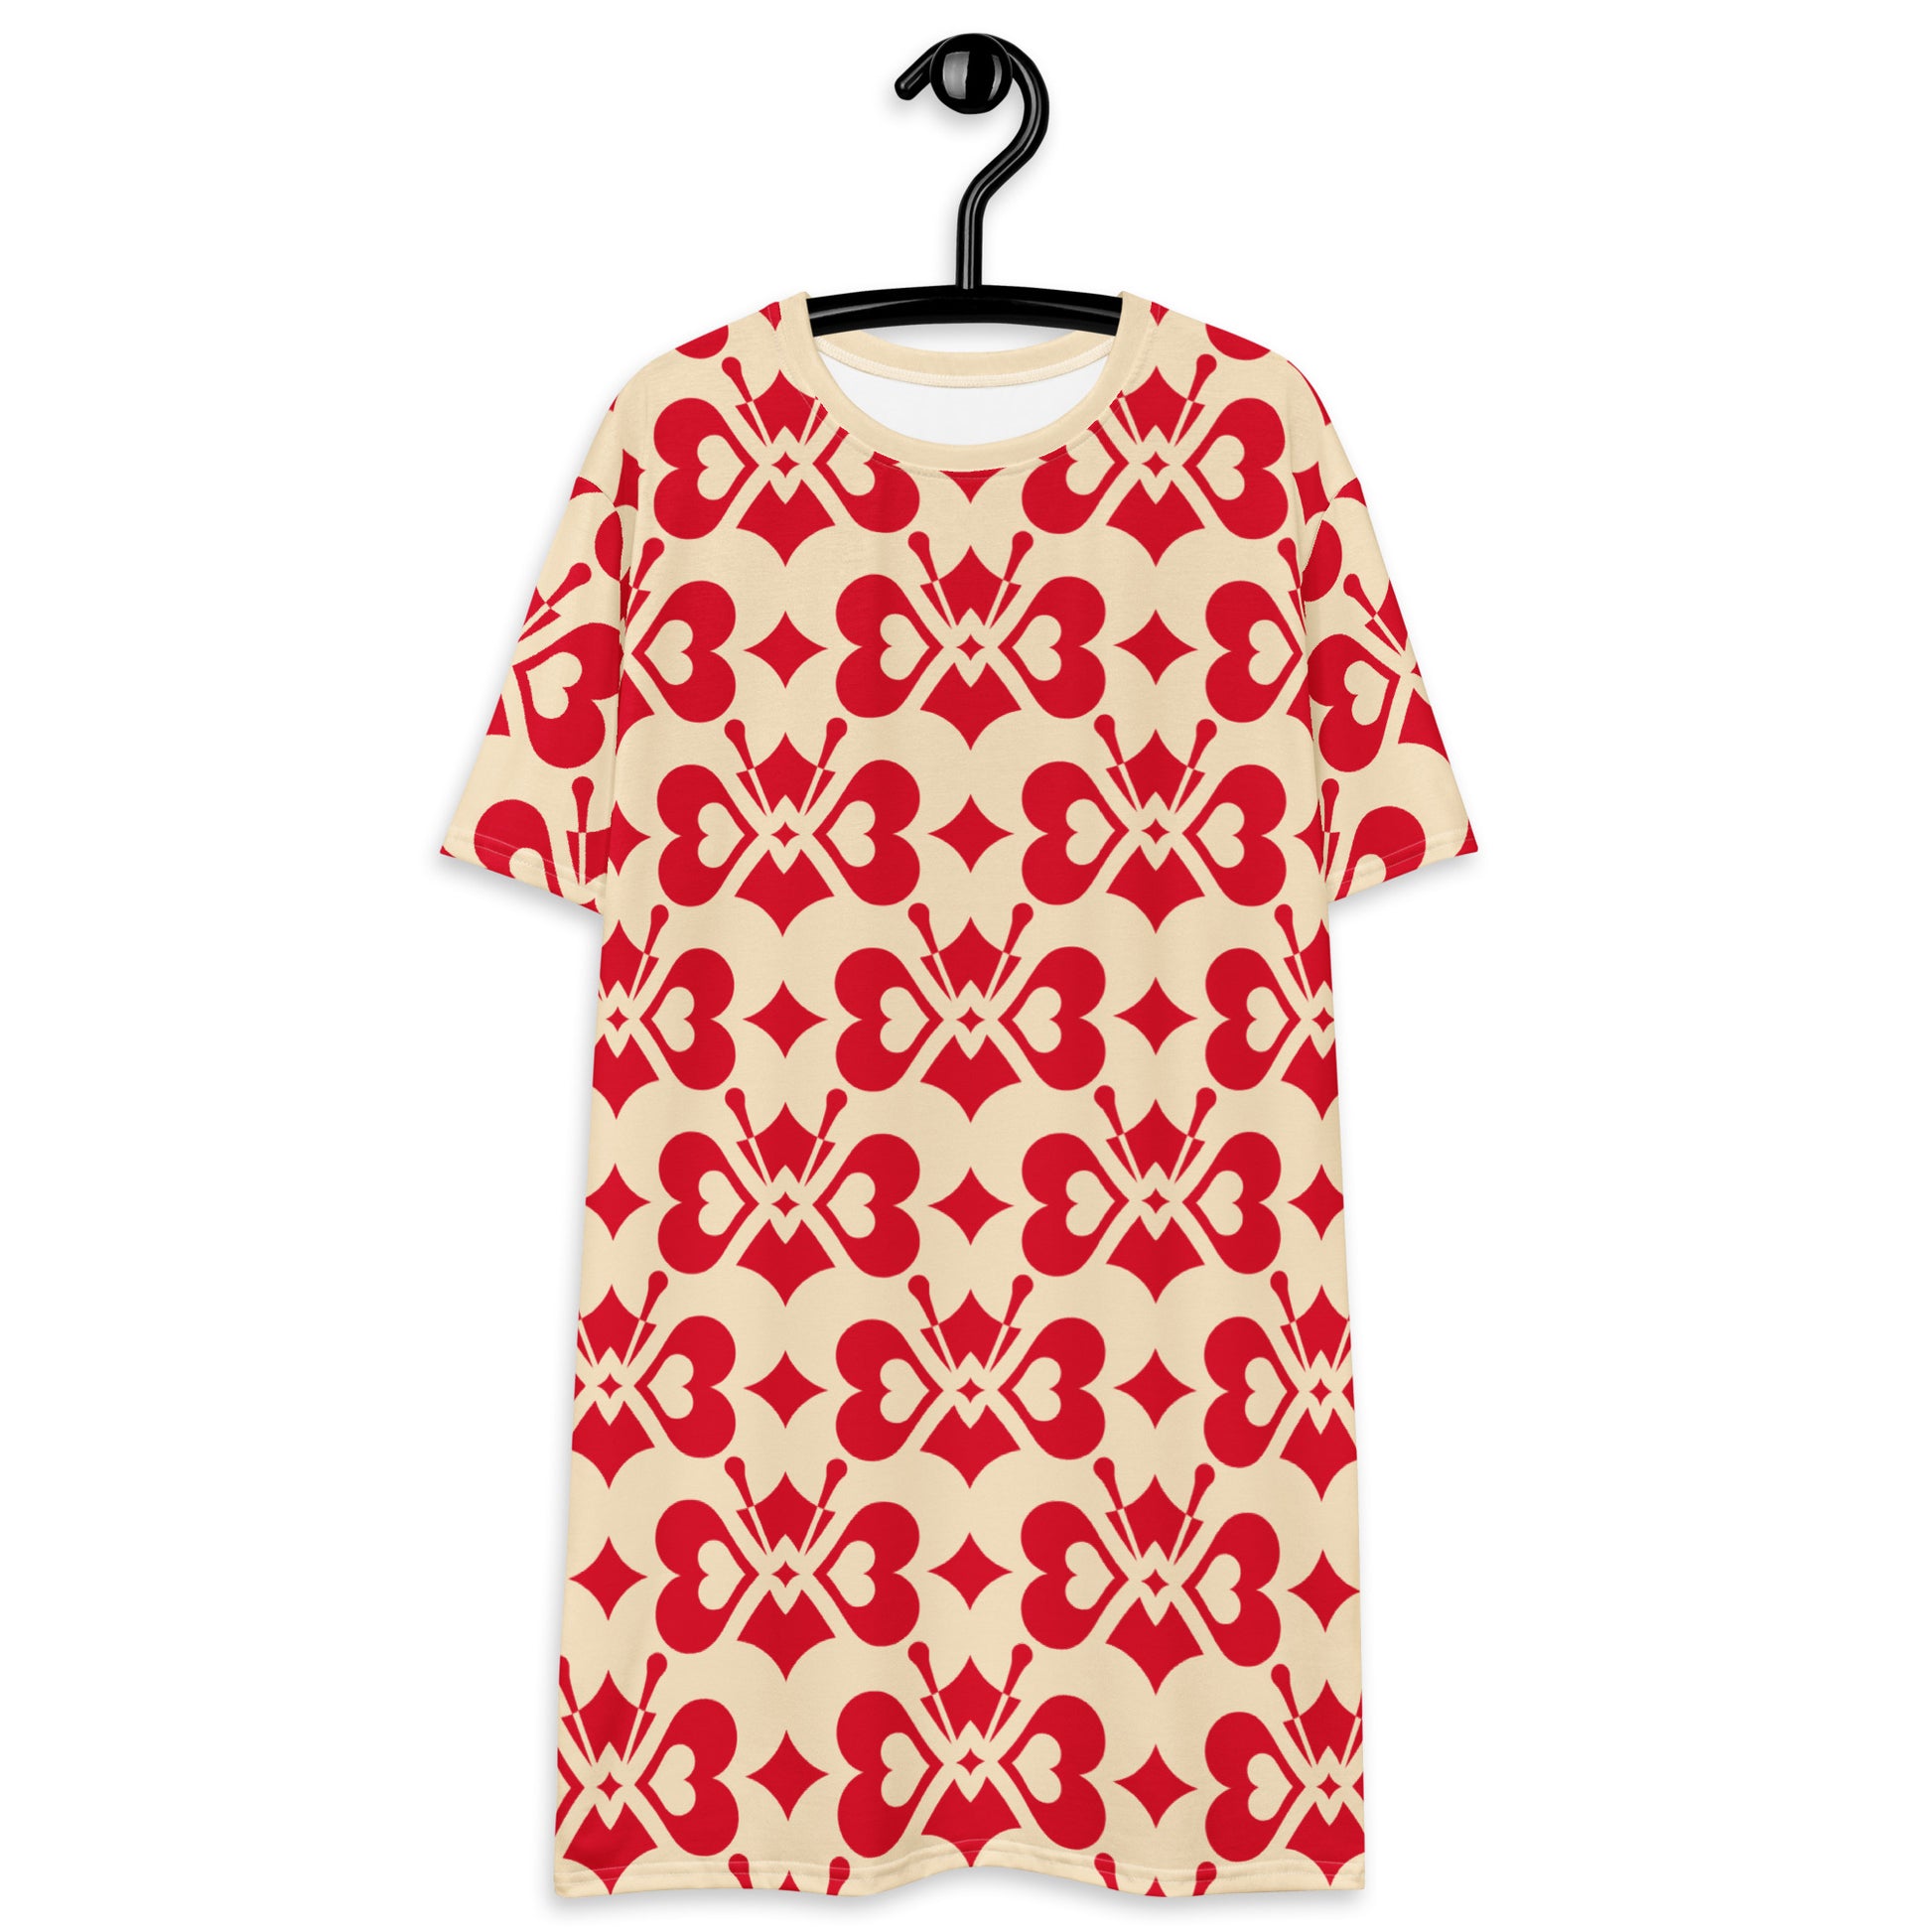 LOVE BUTTERFLY redlight - T-shirt dress